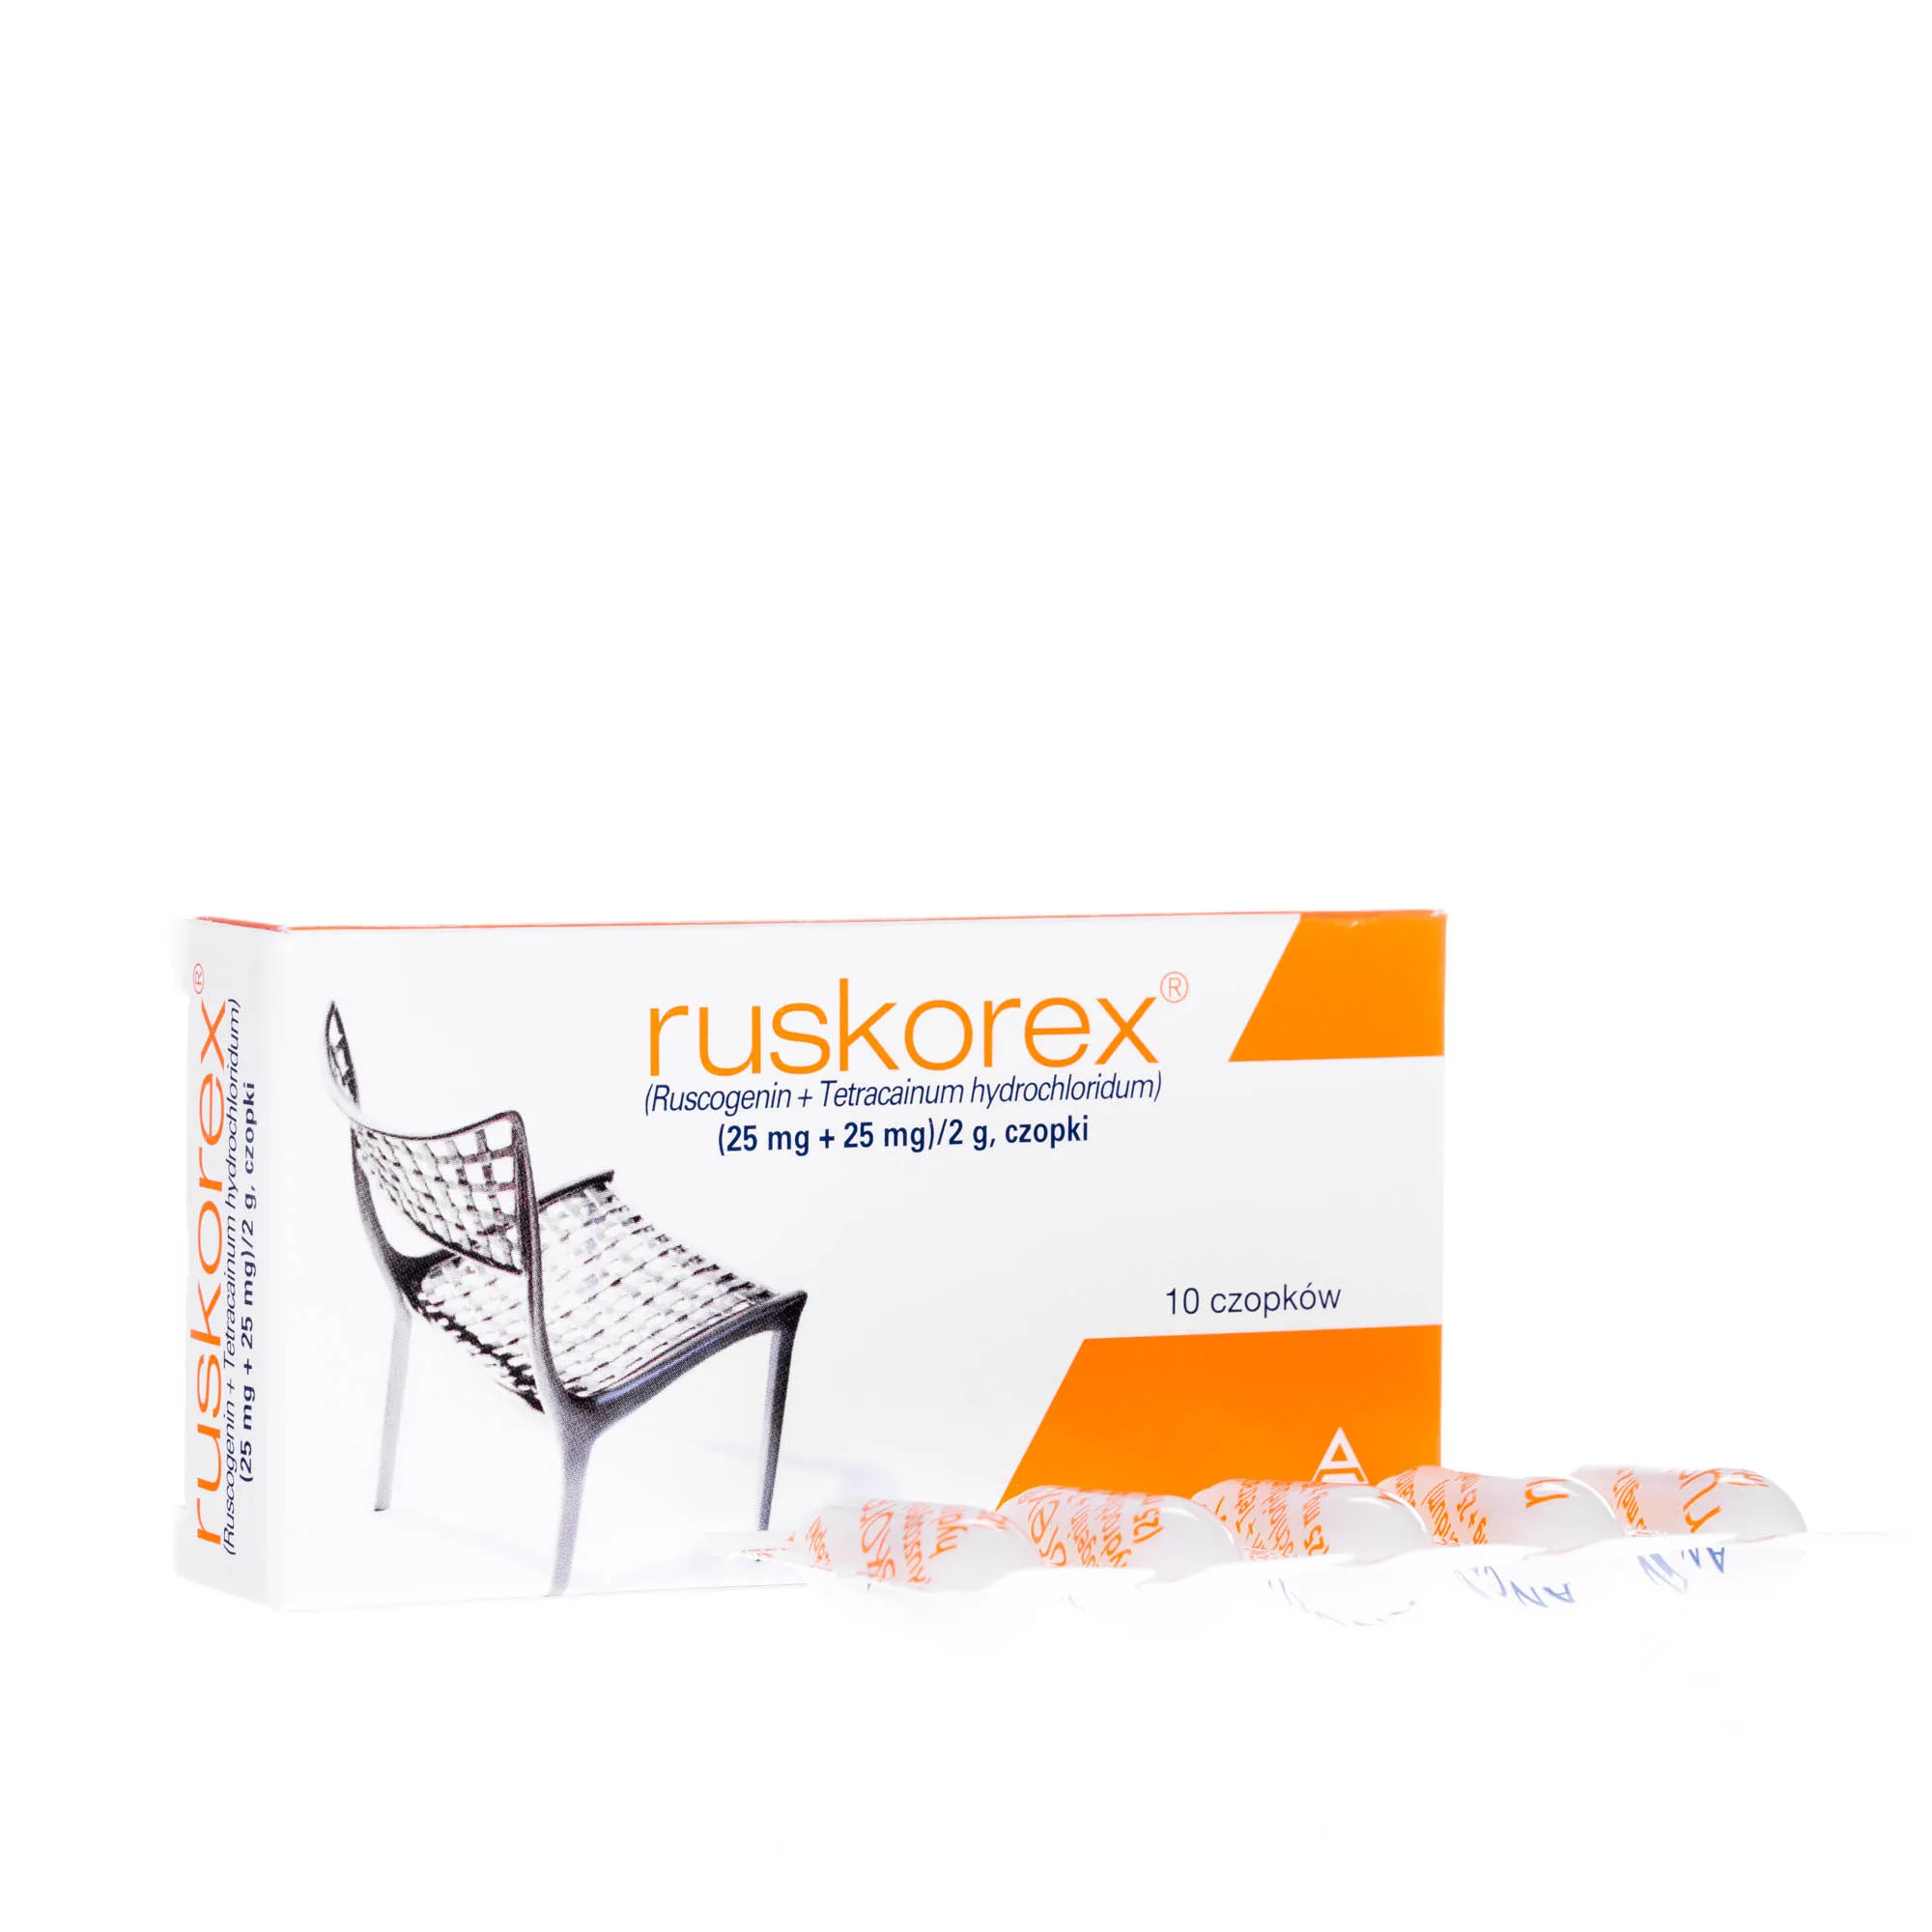 Ruskorex - lek w postaci czopków w objawach bólu i świądu, 10 szt. 